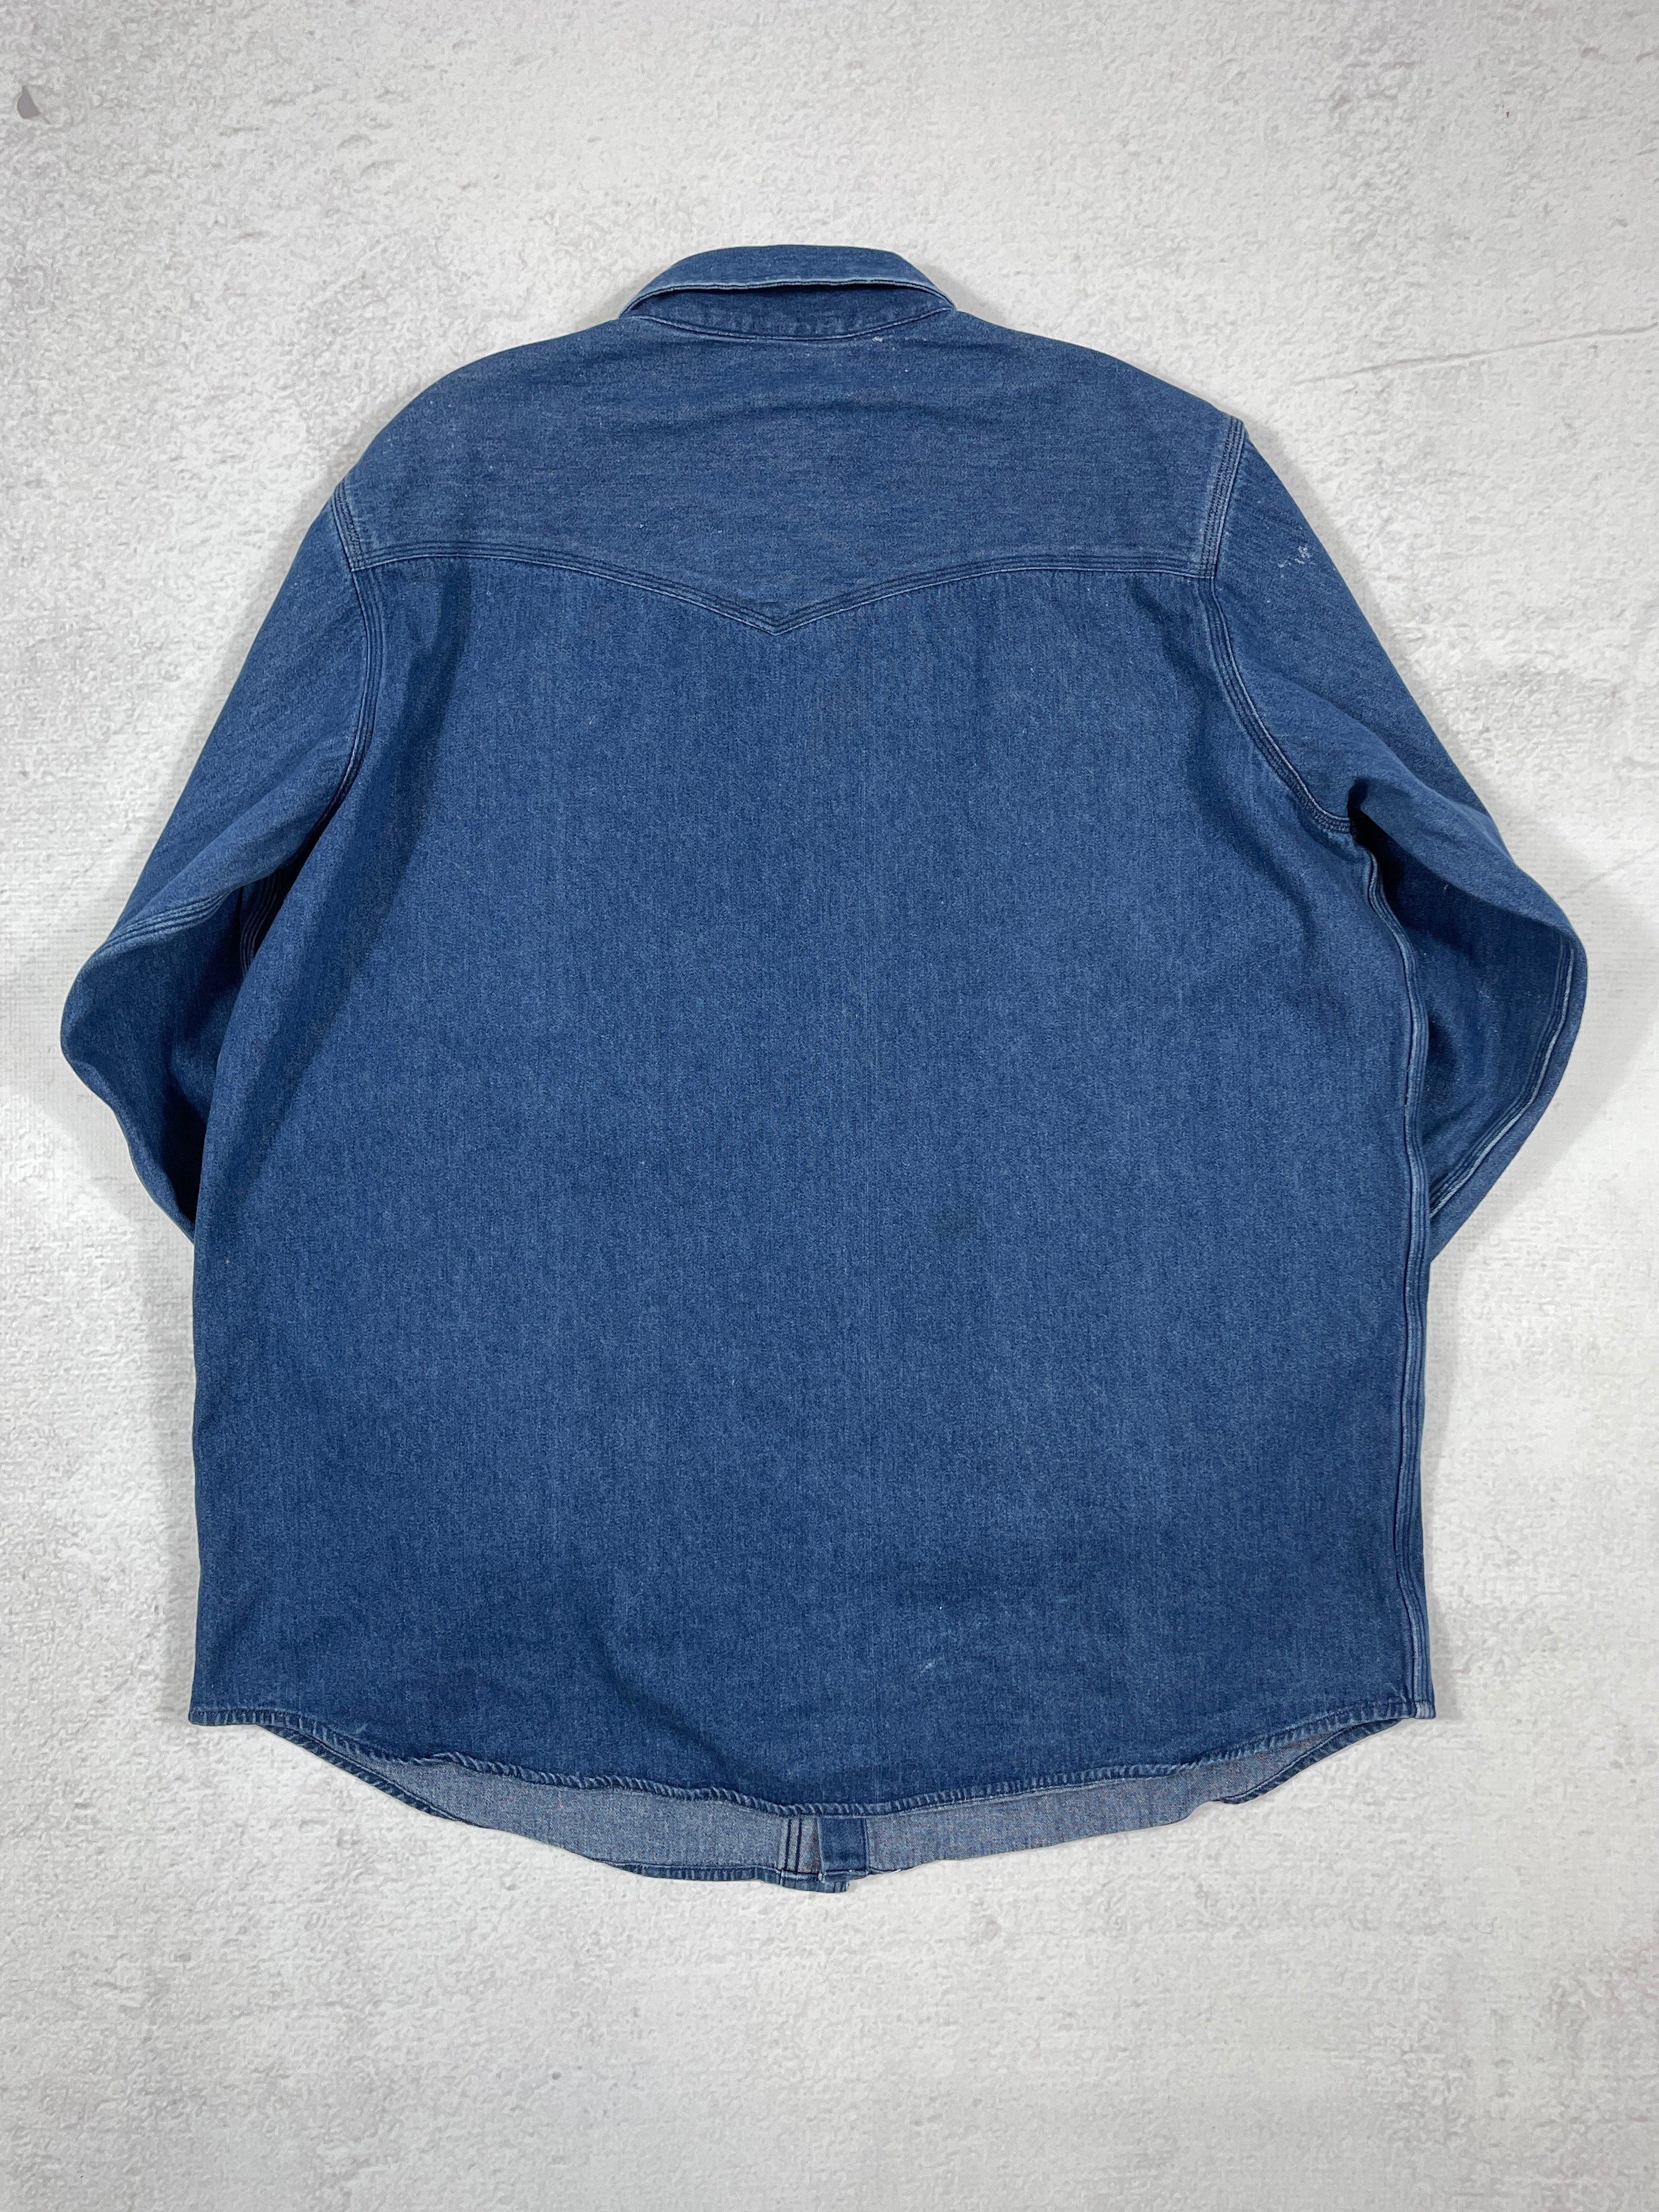 Vintage Carhartt Denim Buttoned Shirt - Men's 2XL